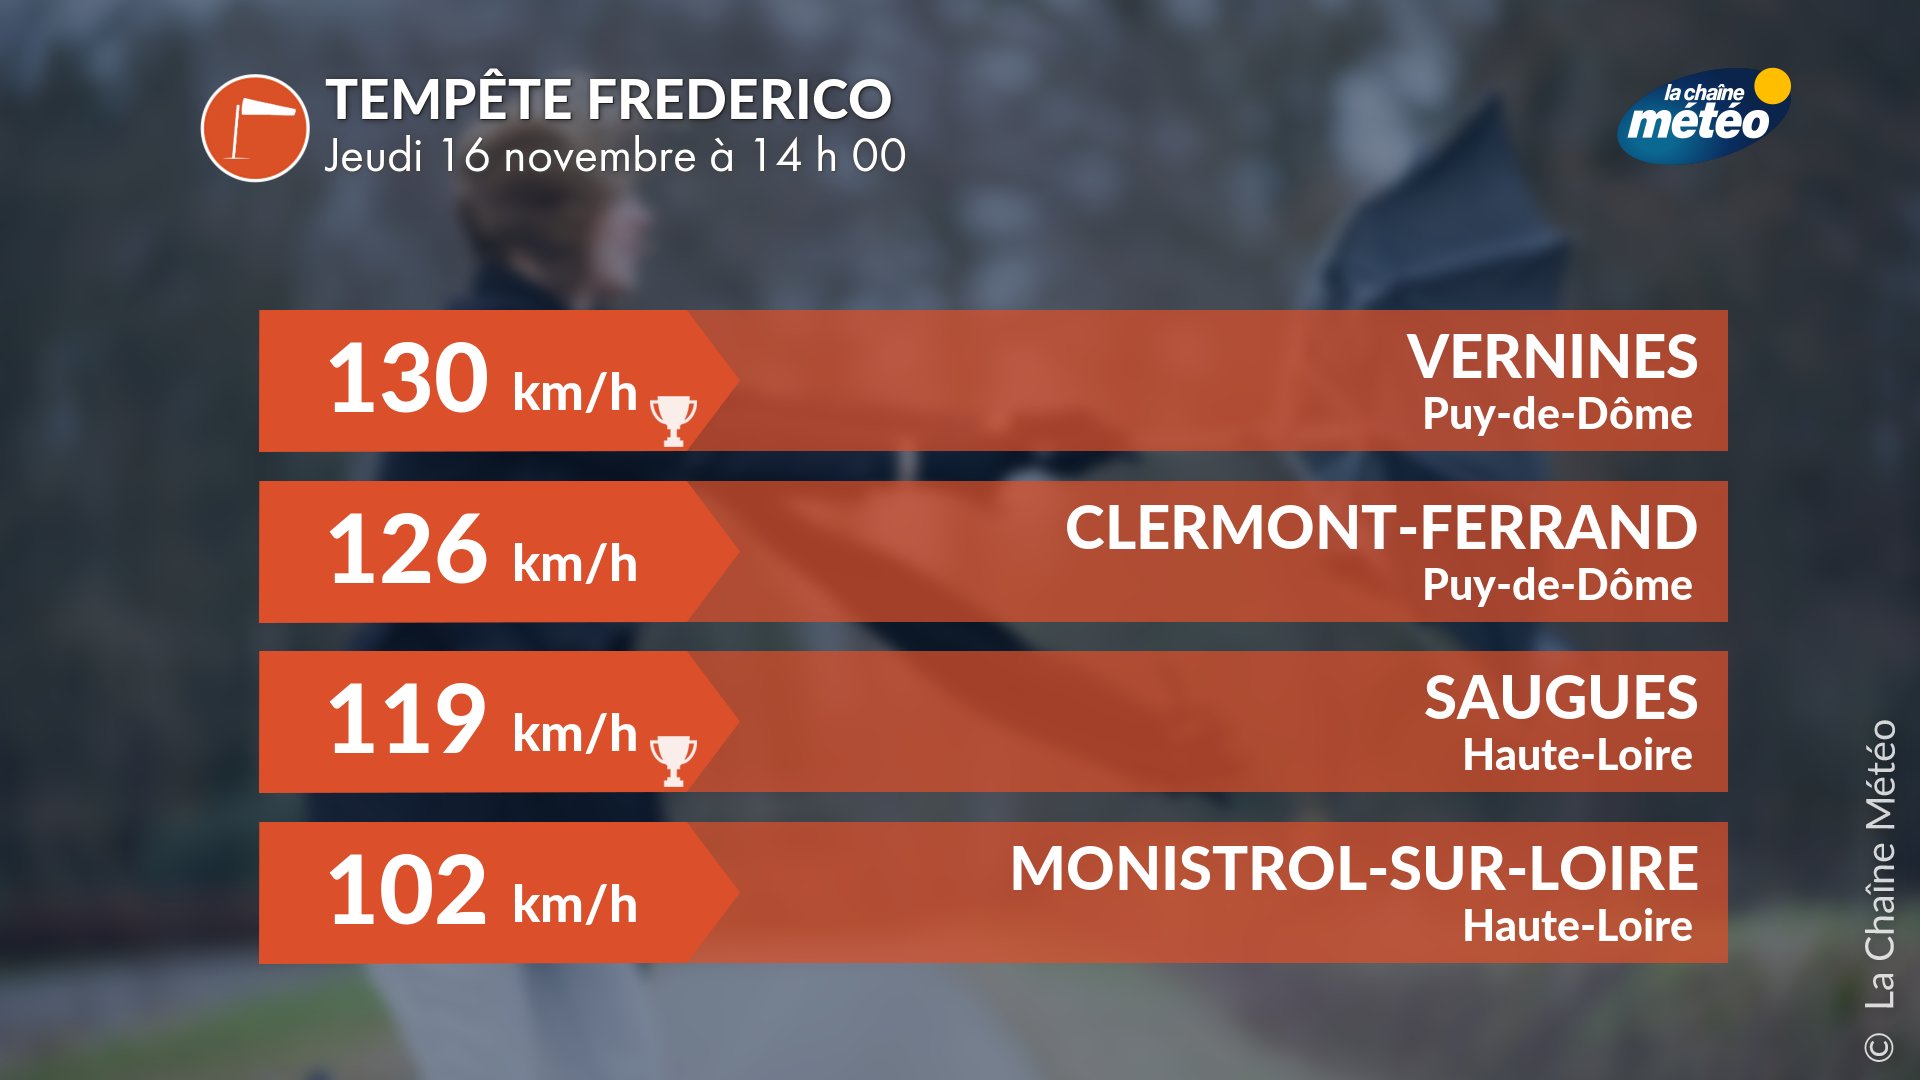 La Chaîne Météo on X: "La #tempête #Frederico sévit en #Auvergne avec des  records mensuels de vent établis à #Vernines et #Saugues. A #ClermontFerrand,  une rafale vient d'atteindre 126 km/h, s'approchant du